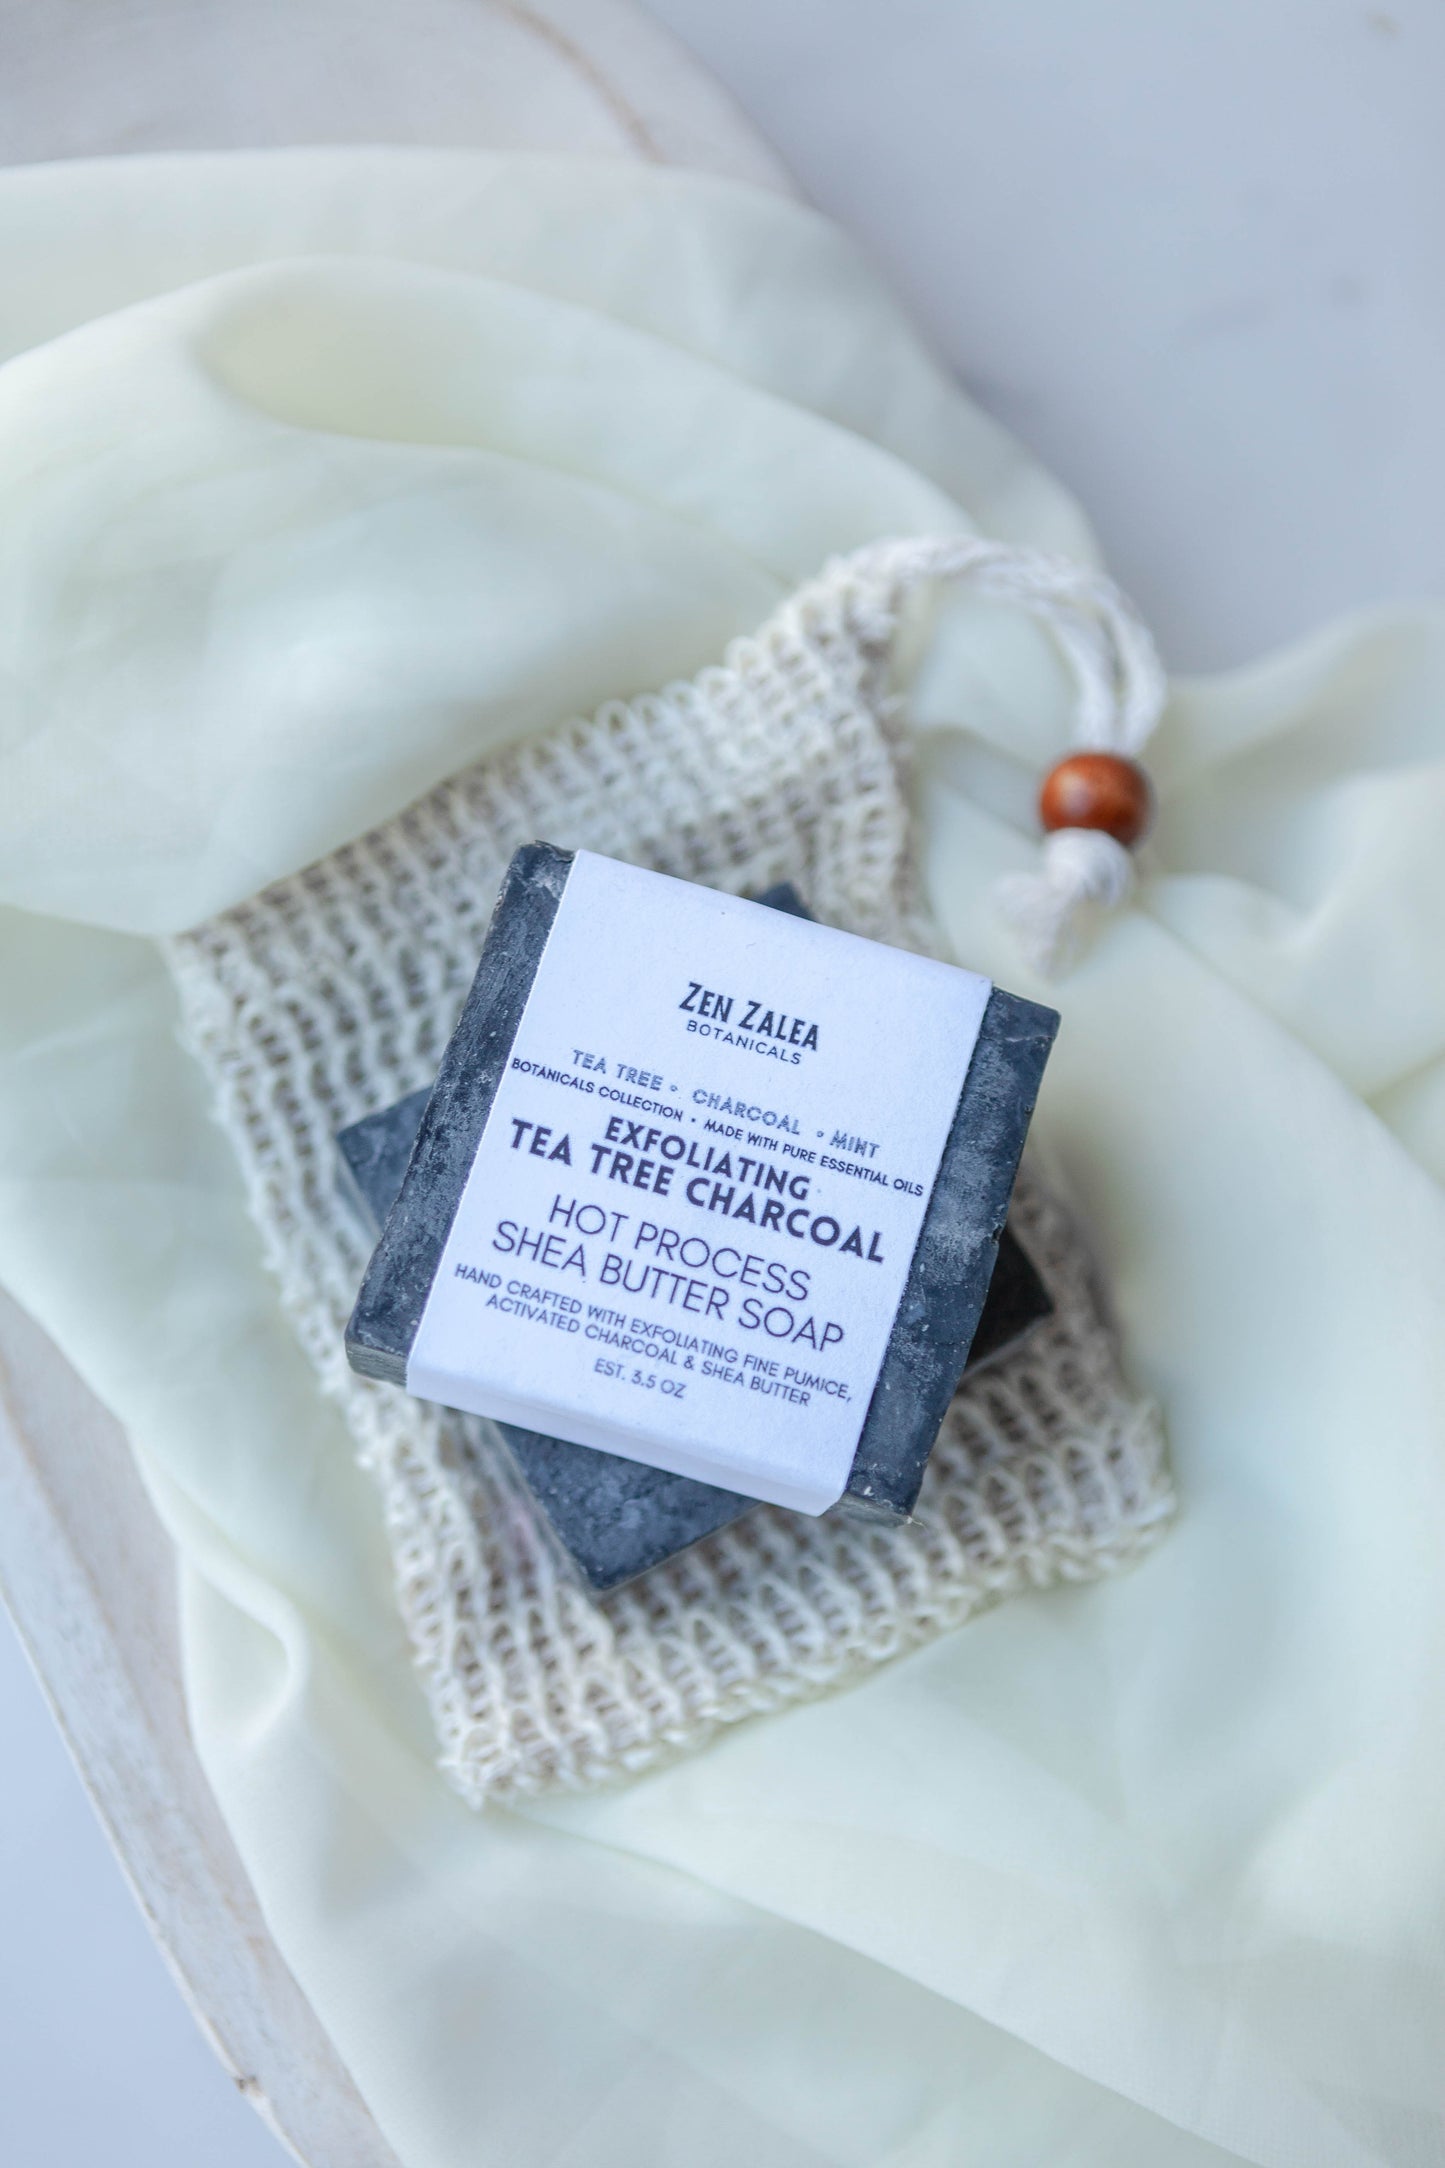 Tea Tree Charcoal Exfoliating Hot Process Soap